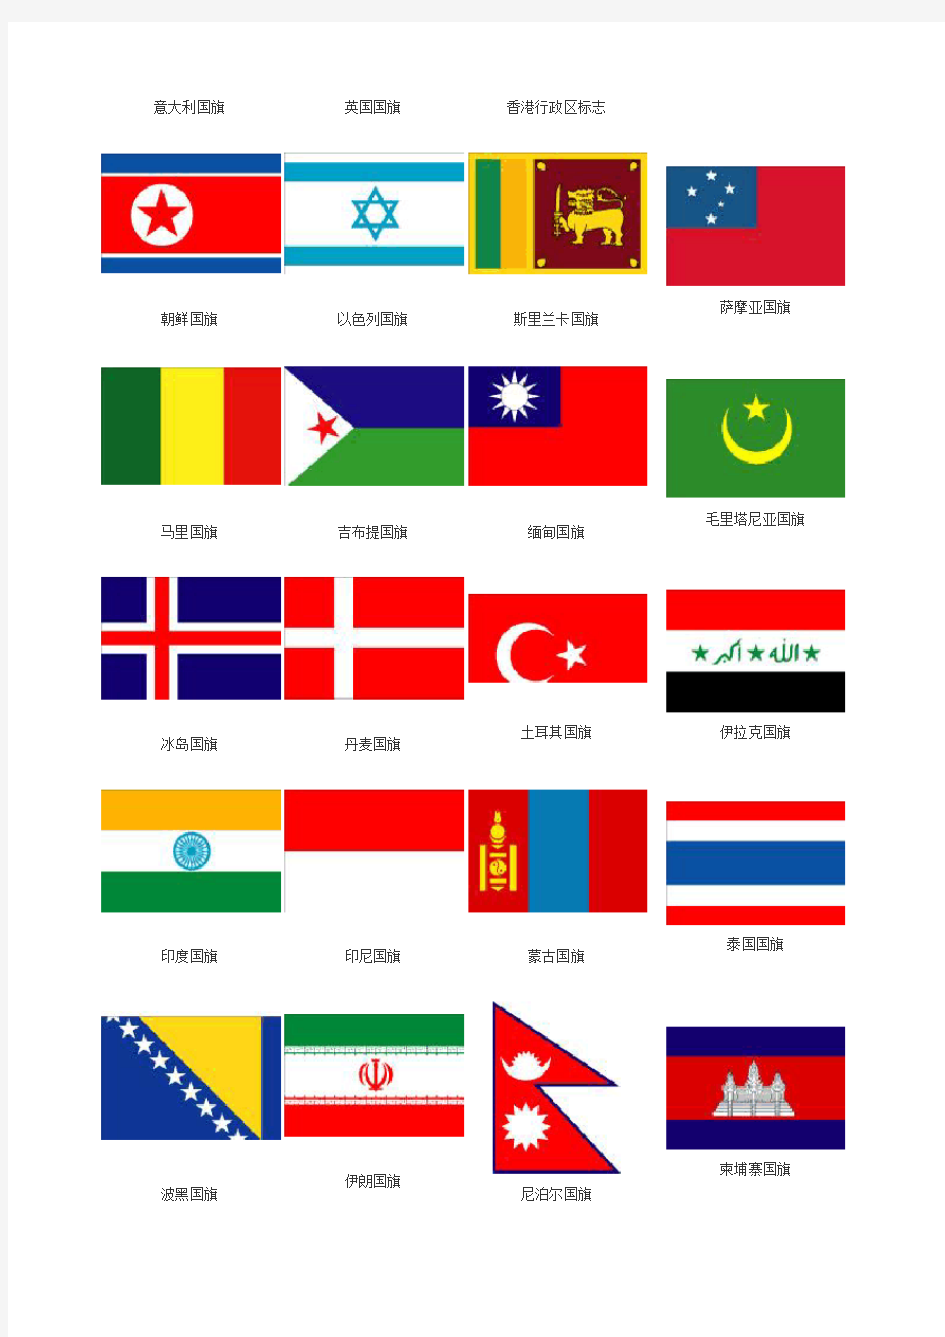 世界各国国旗图片及含义